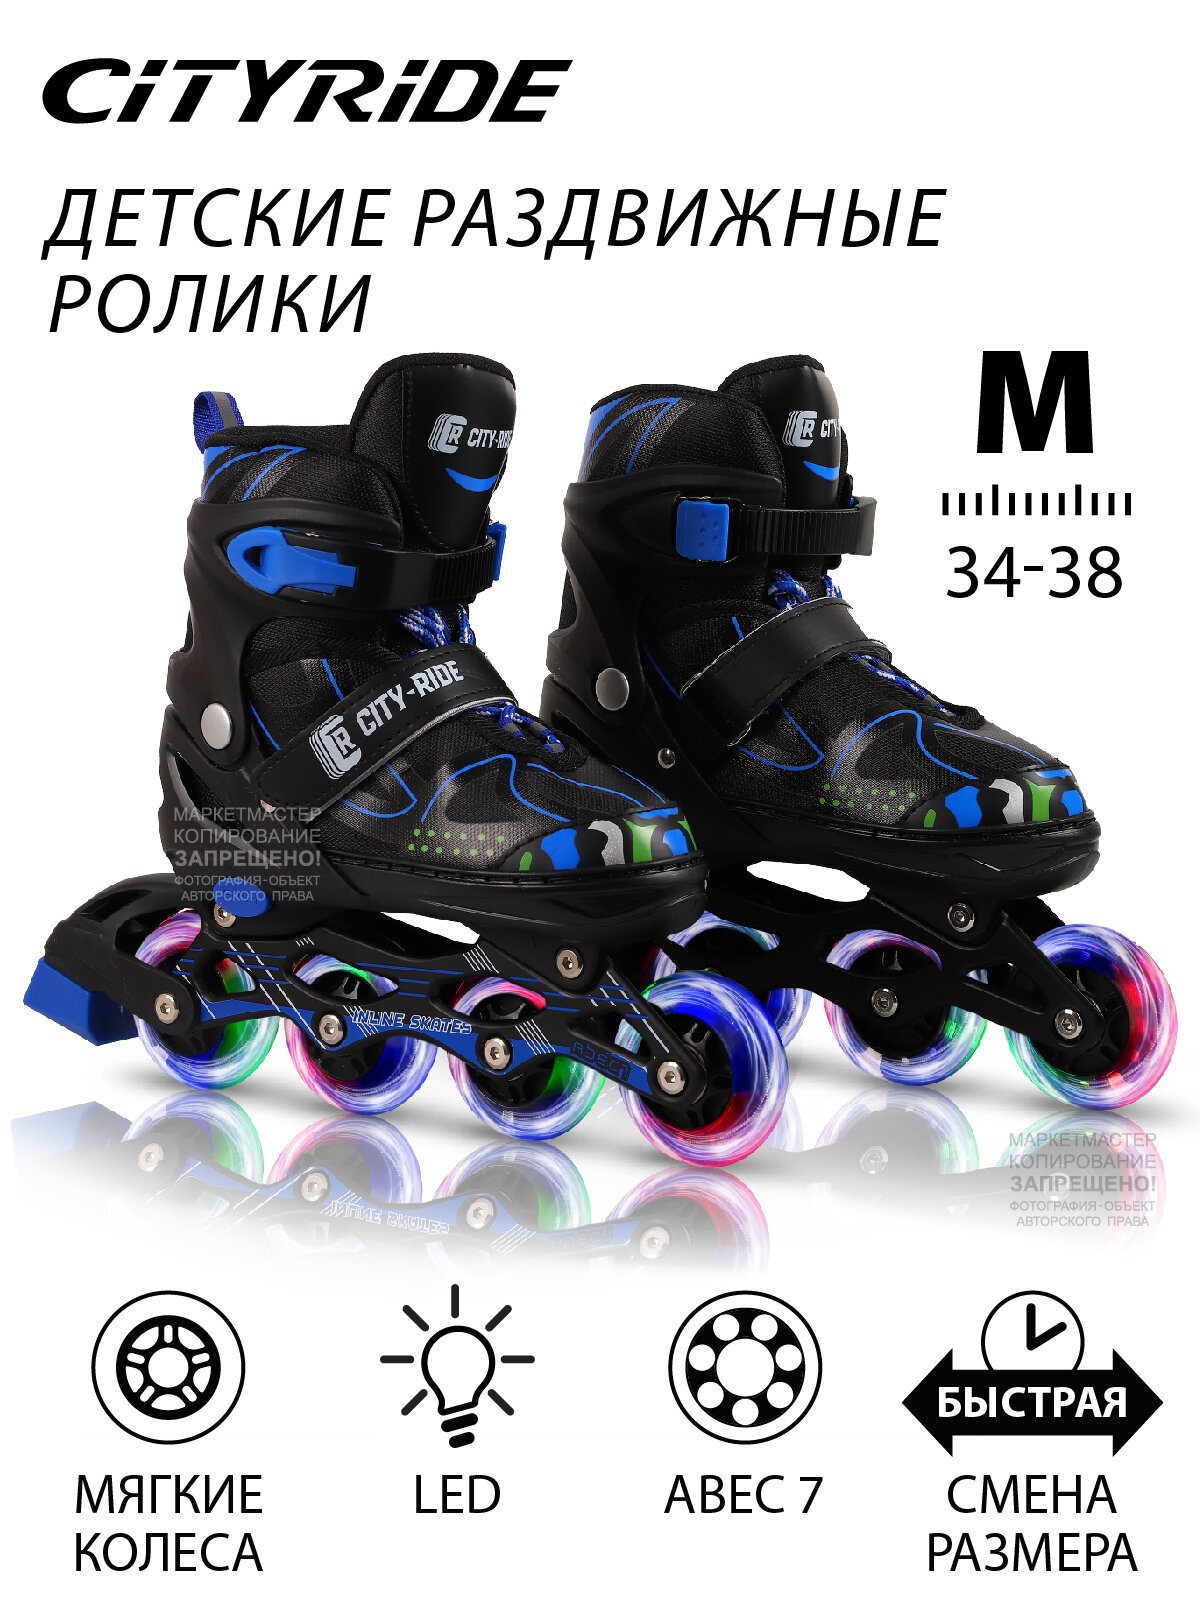 Роликовые коньки детские ТМ CITYRIDE, PU колеса, все колеса светятся, подшипники ABEC 7, размер М (34-38), раздвижные, JB0206369